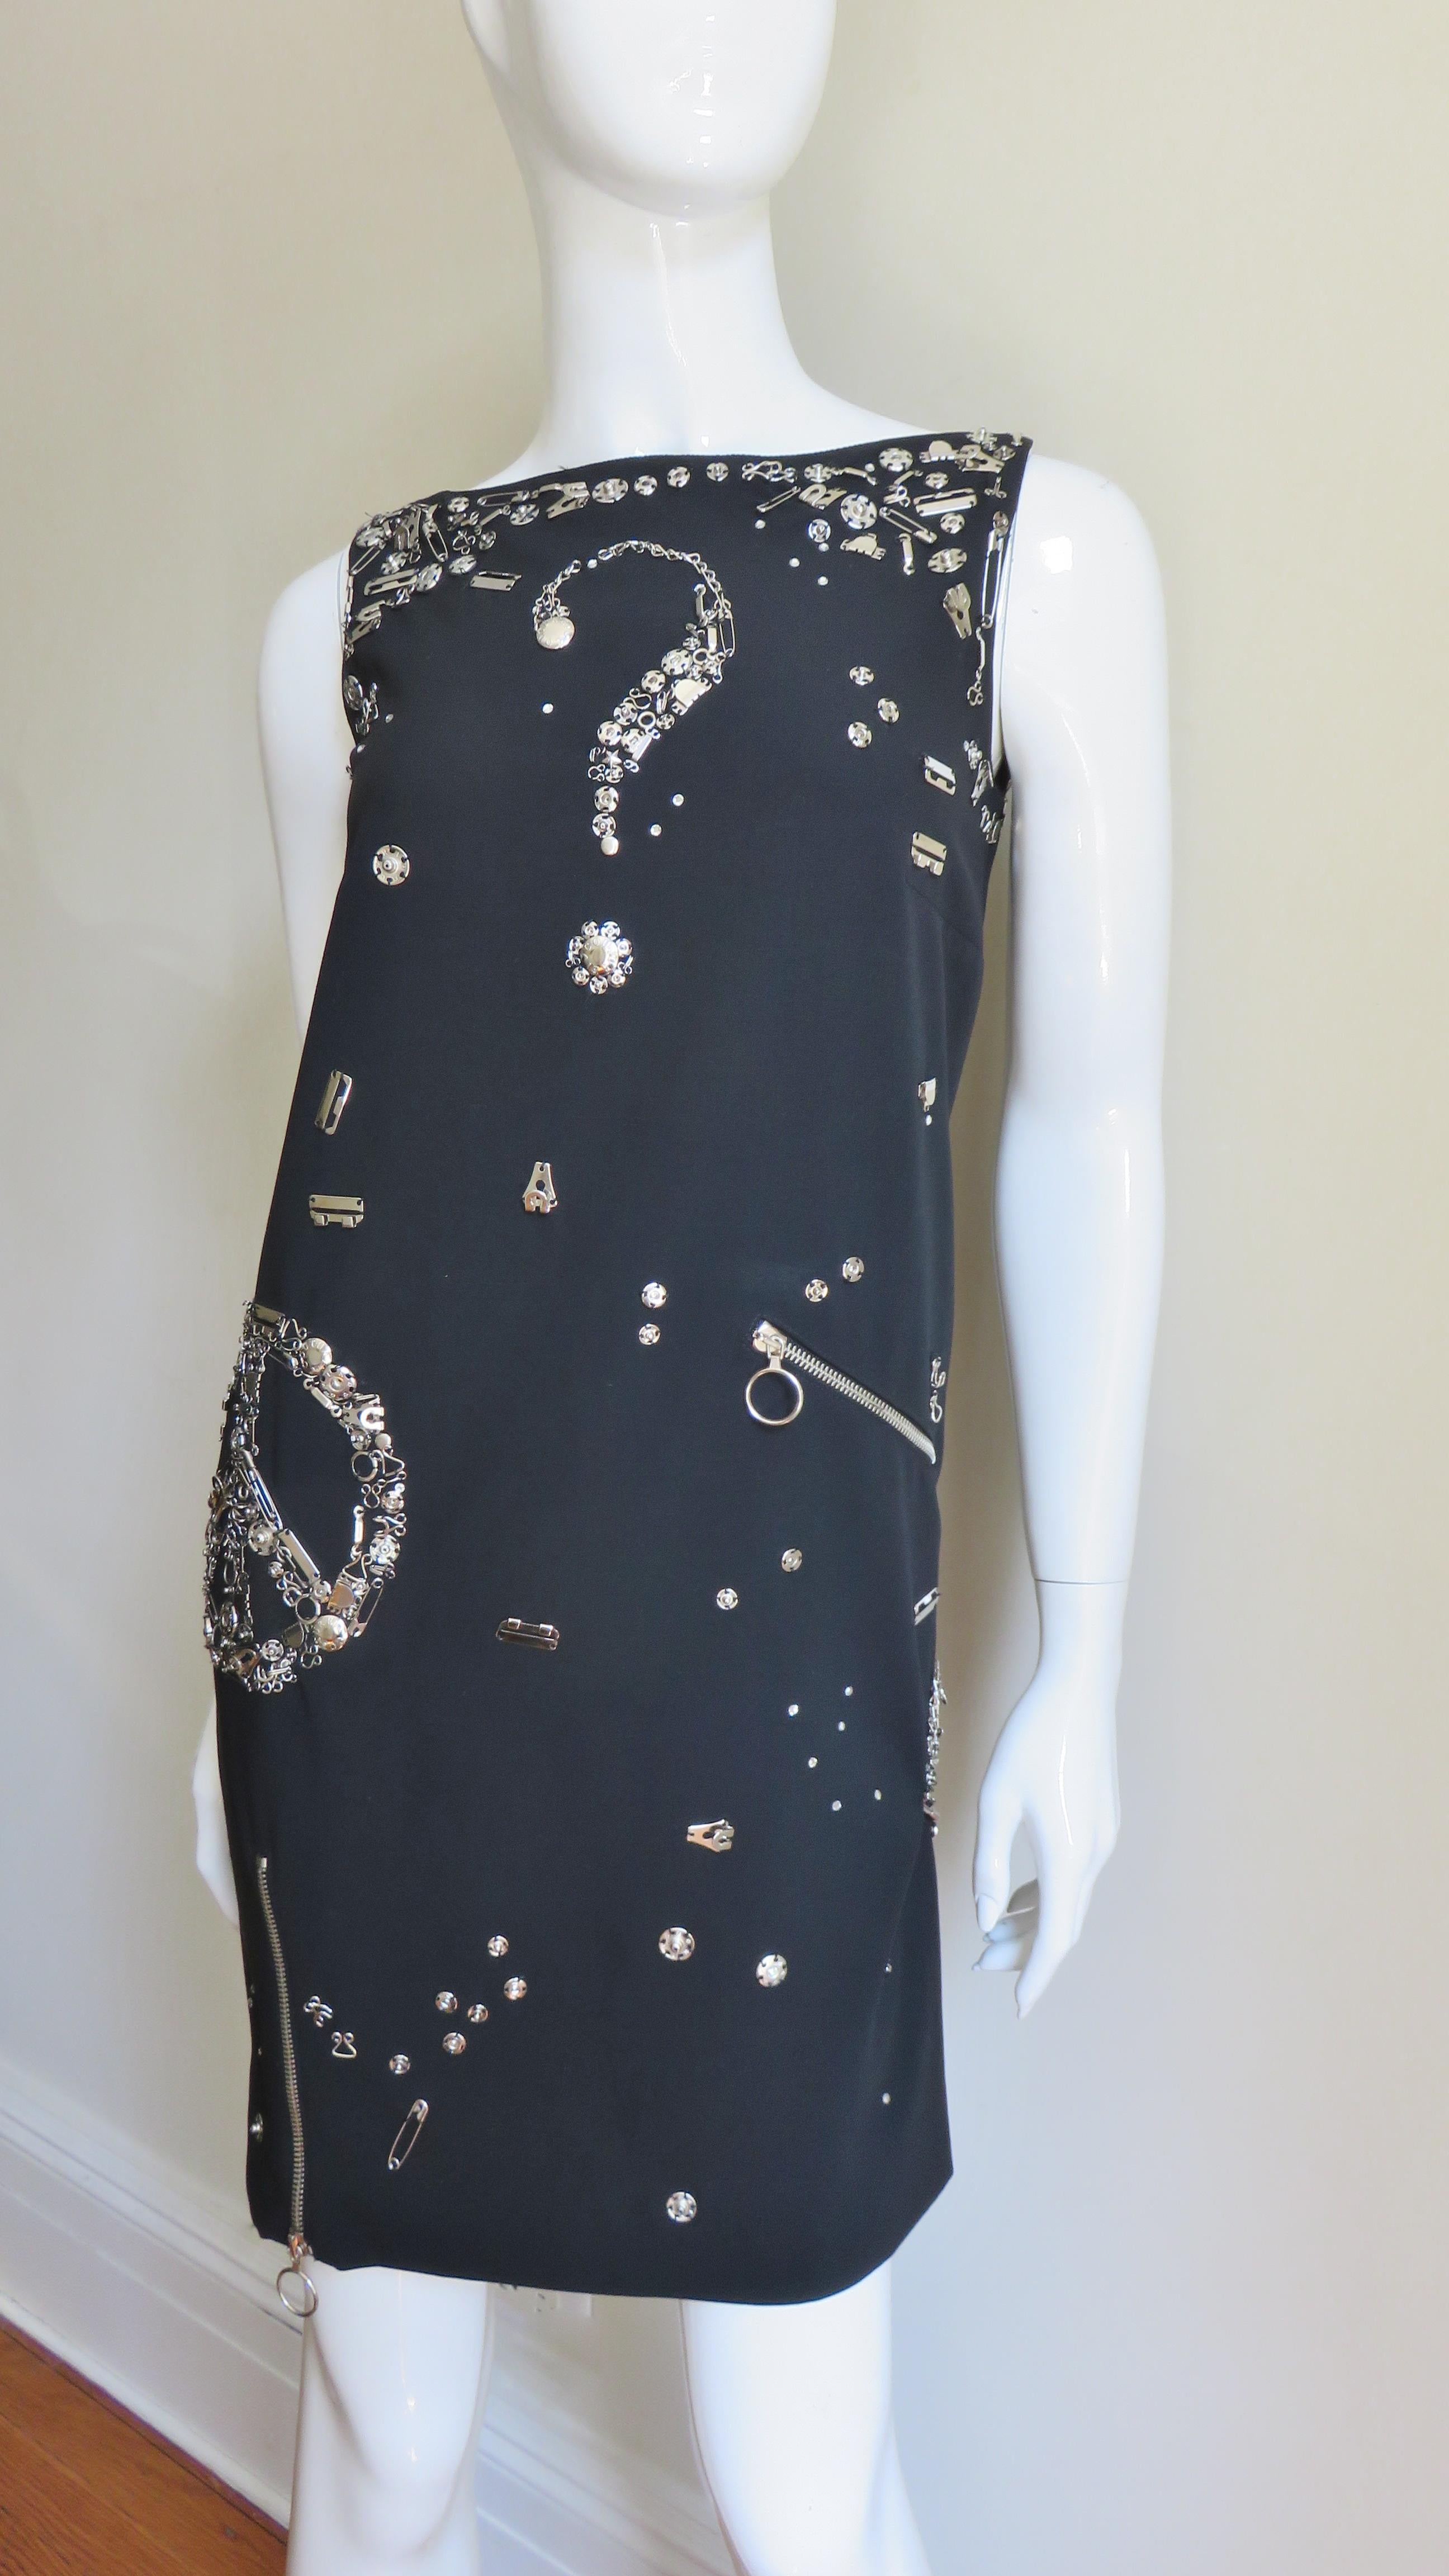 Une fabuleuse robe noire en laine légère de Moschino Couture, ornée de ferrures en métal argenté de différentes sortes.  Il s'agit d'une robe sans manches de style décontracté, dotée de fermetures éclair fonctionnelles à l'ourlet avant, qui